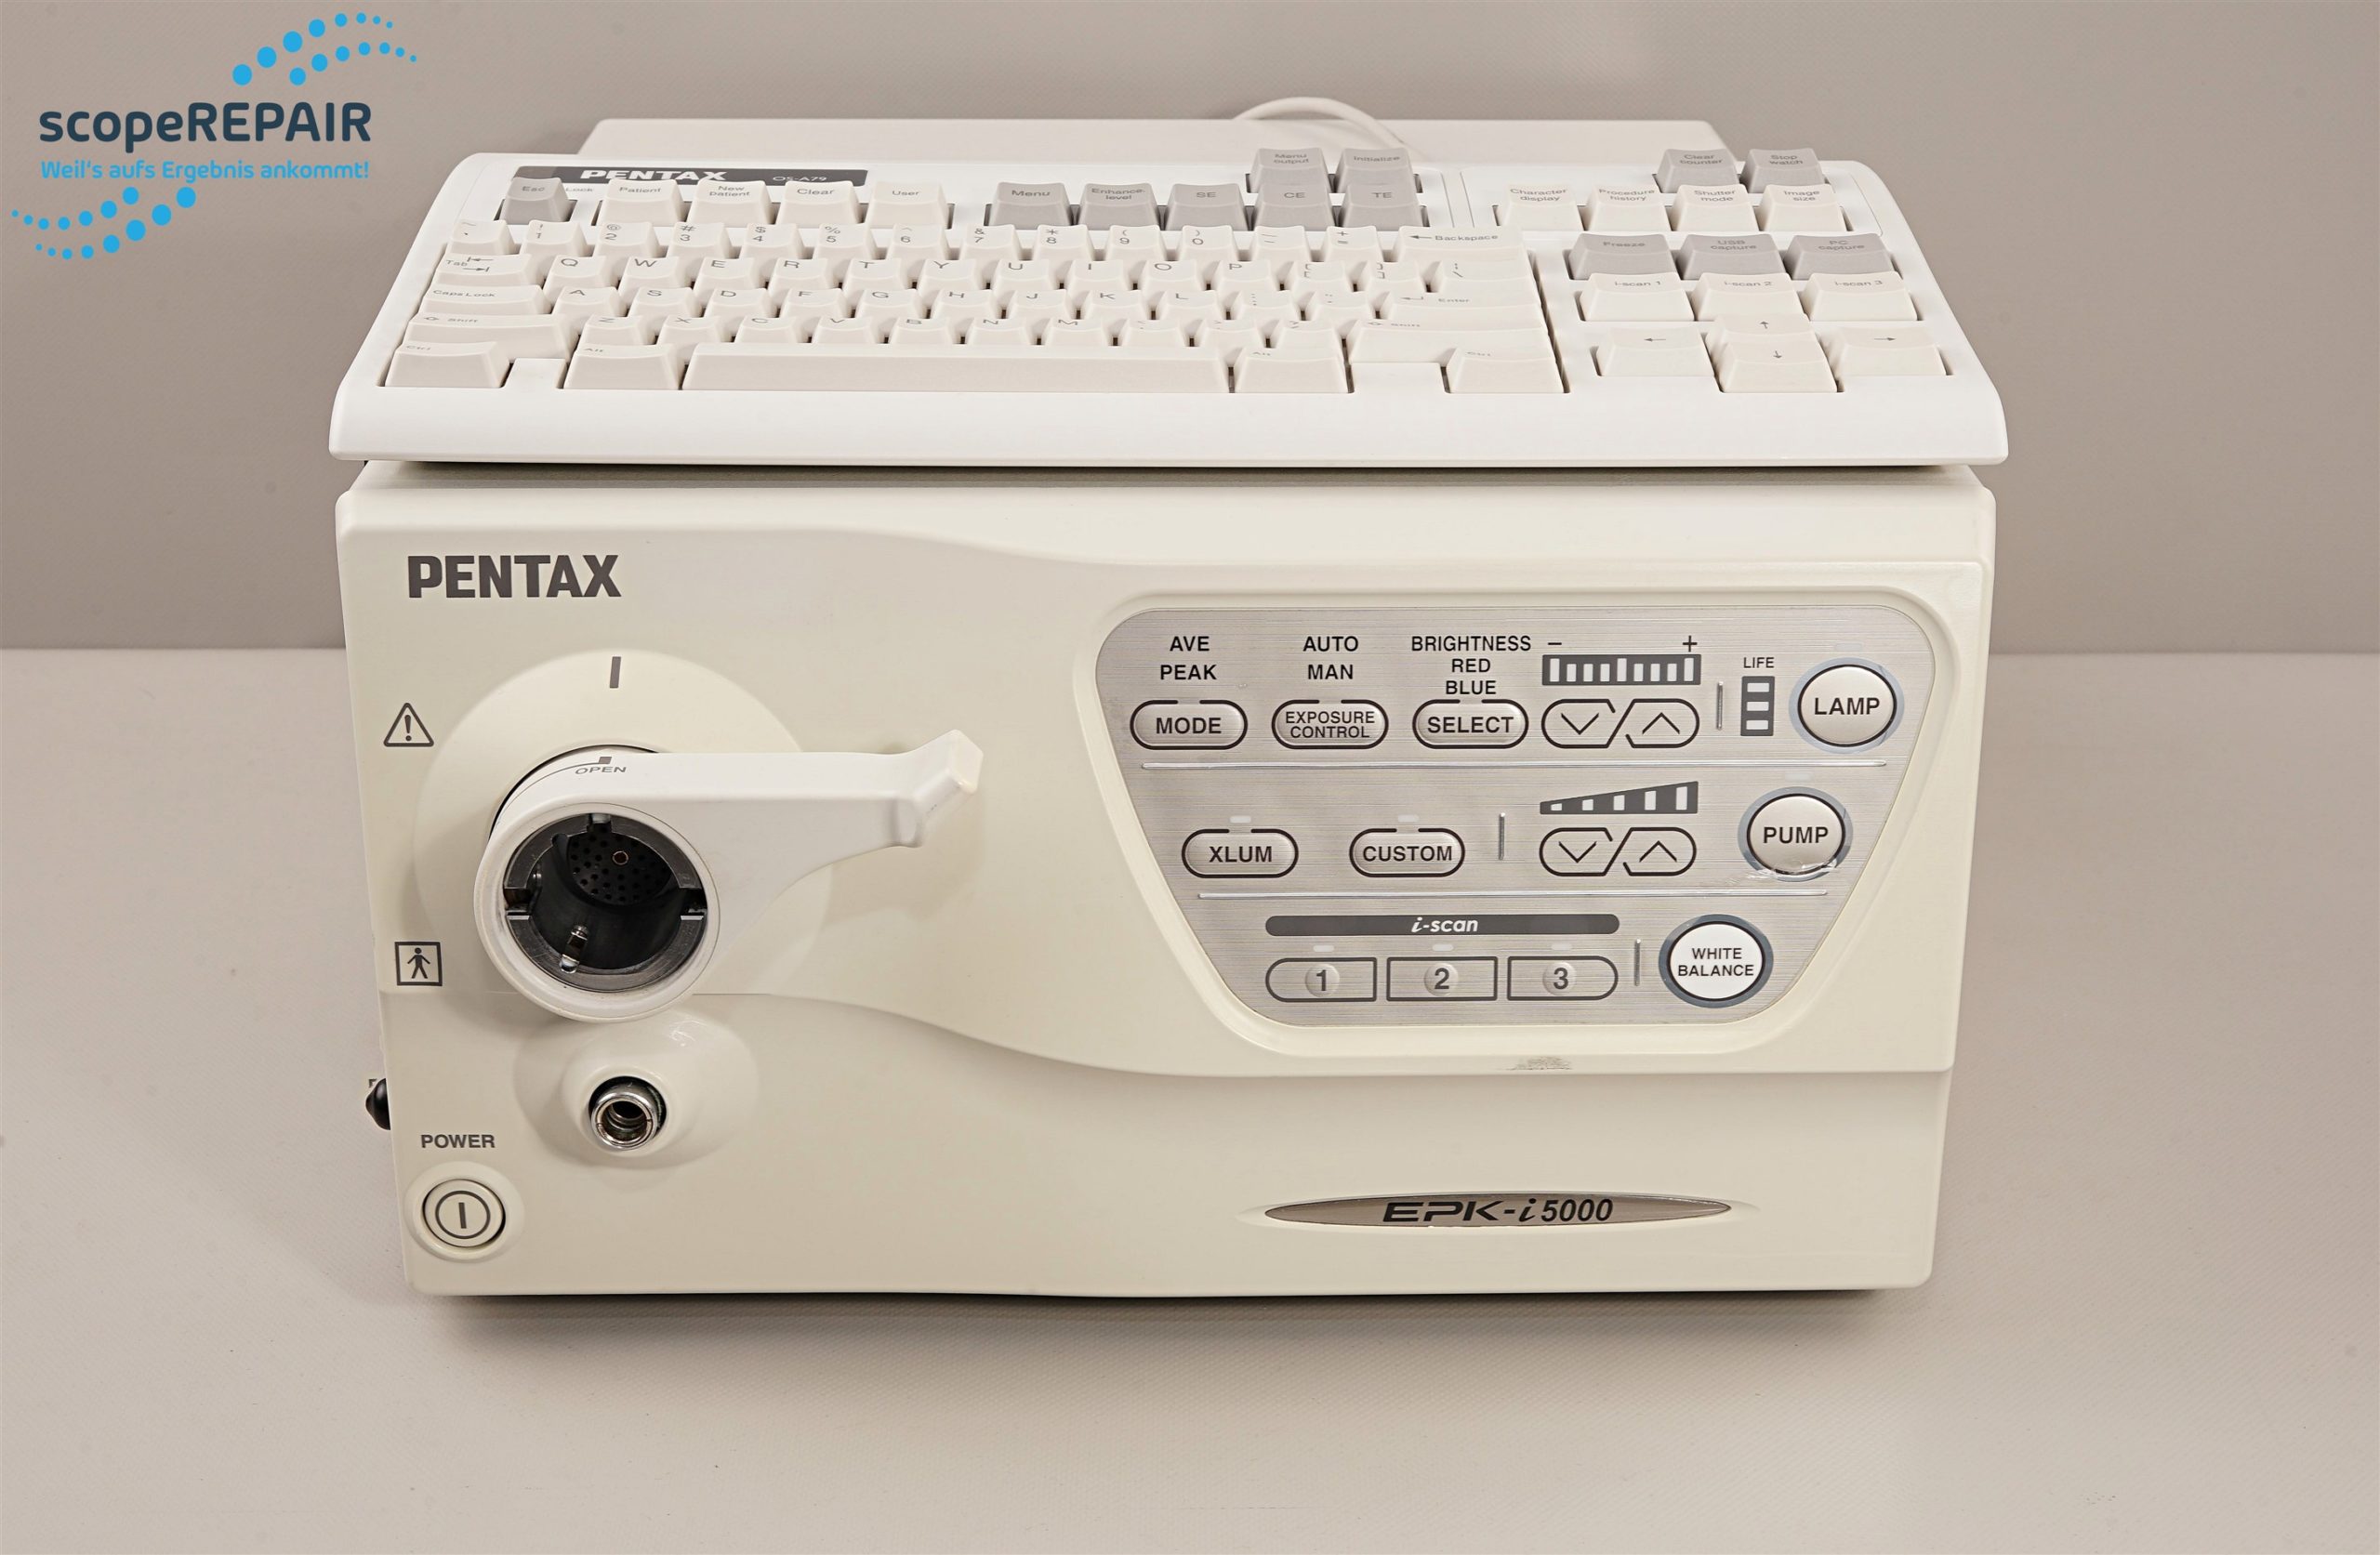 Pentax EPK-i5000